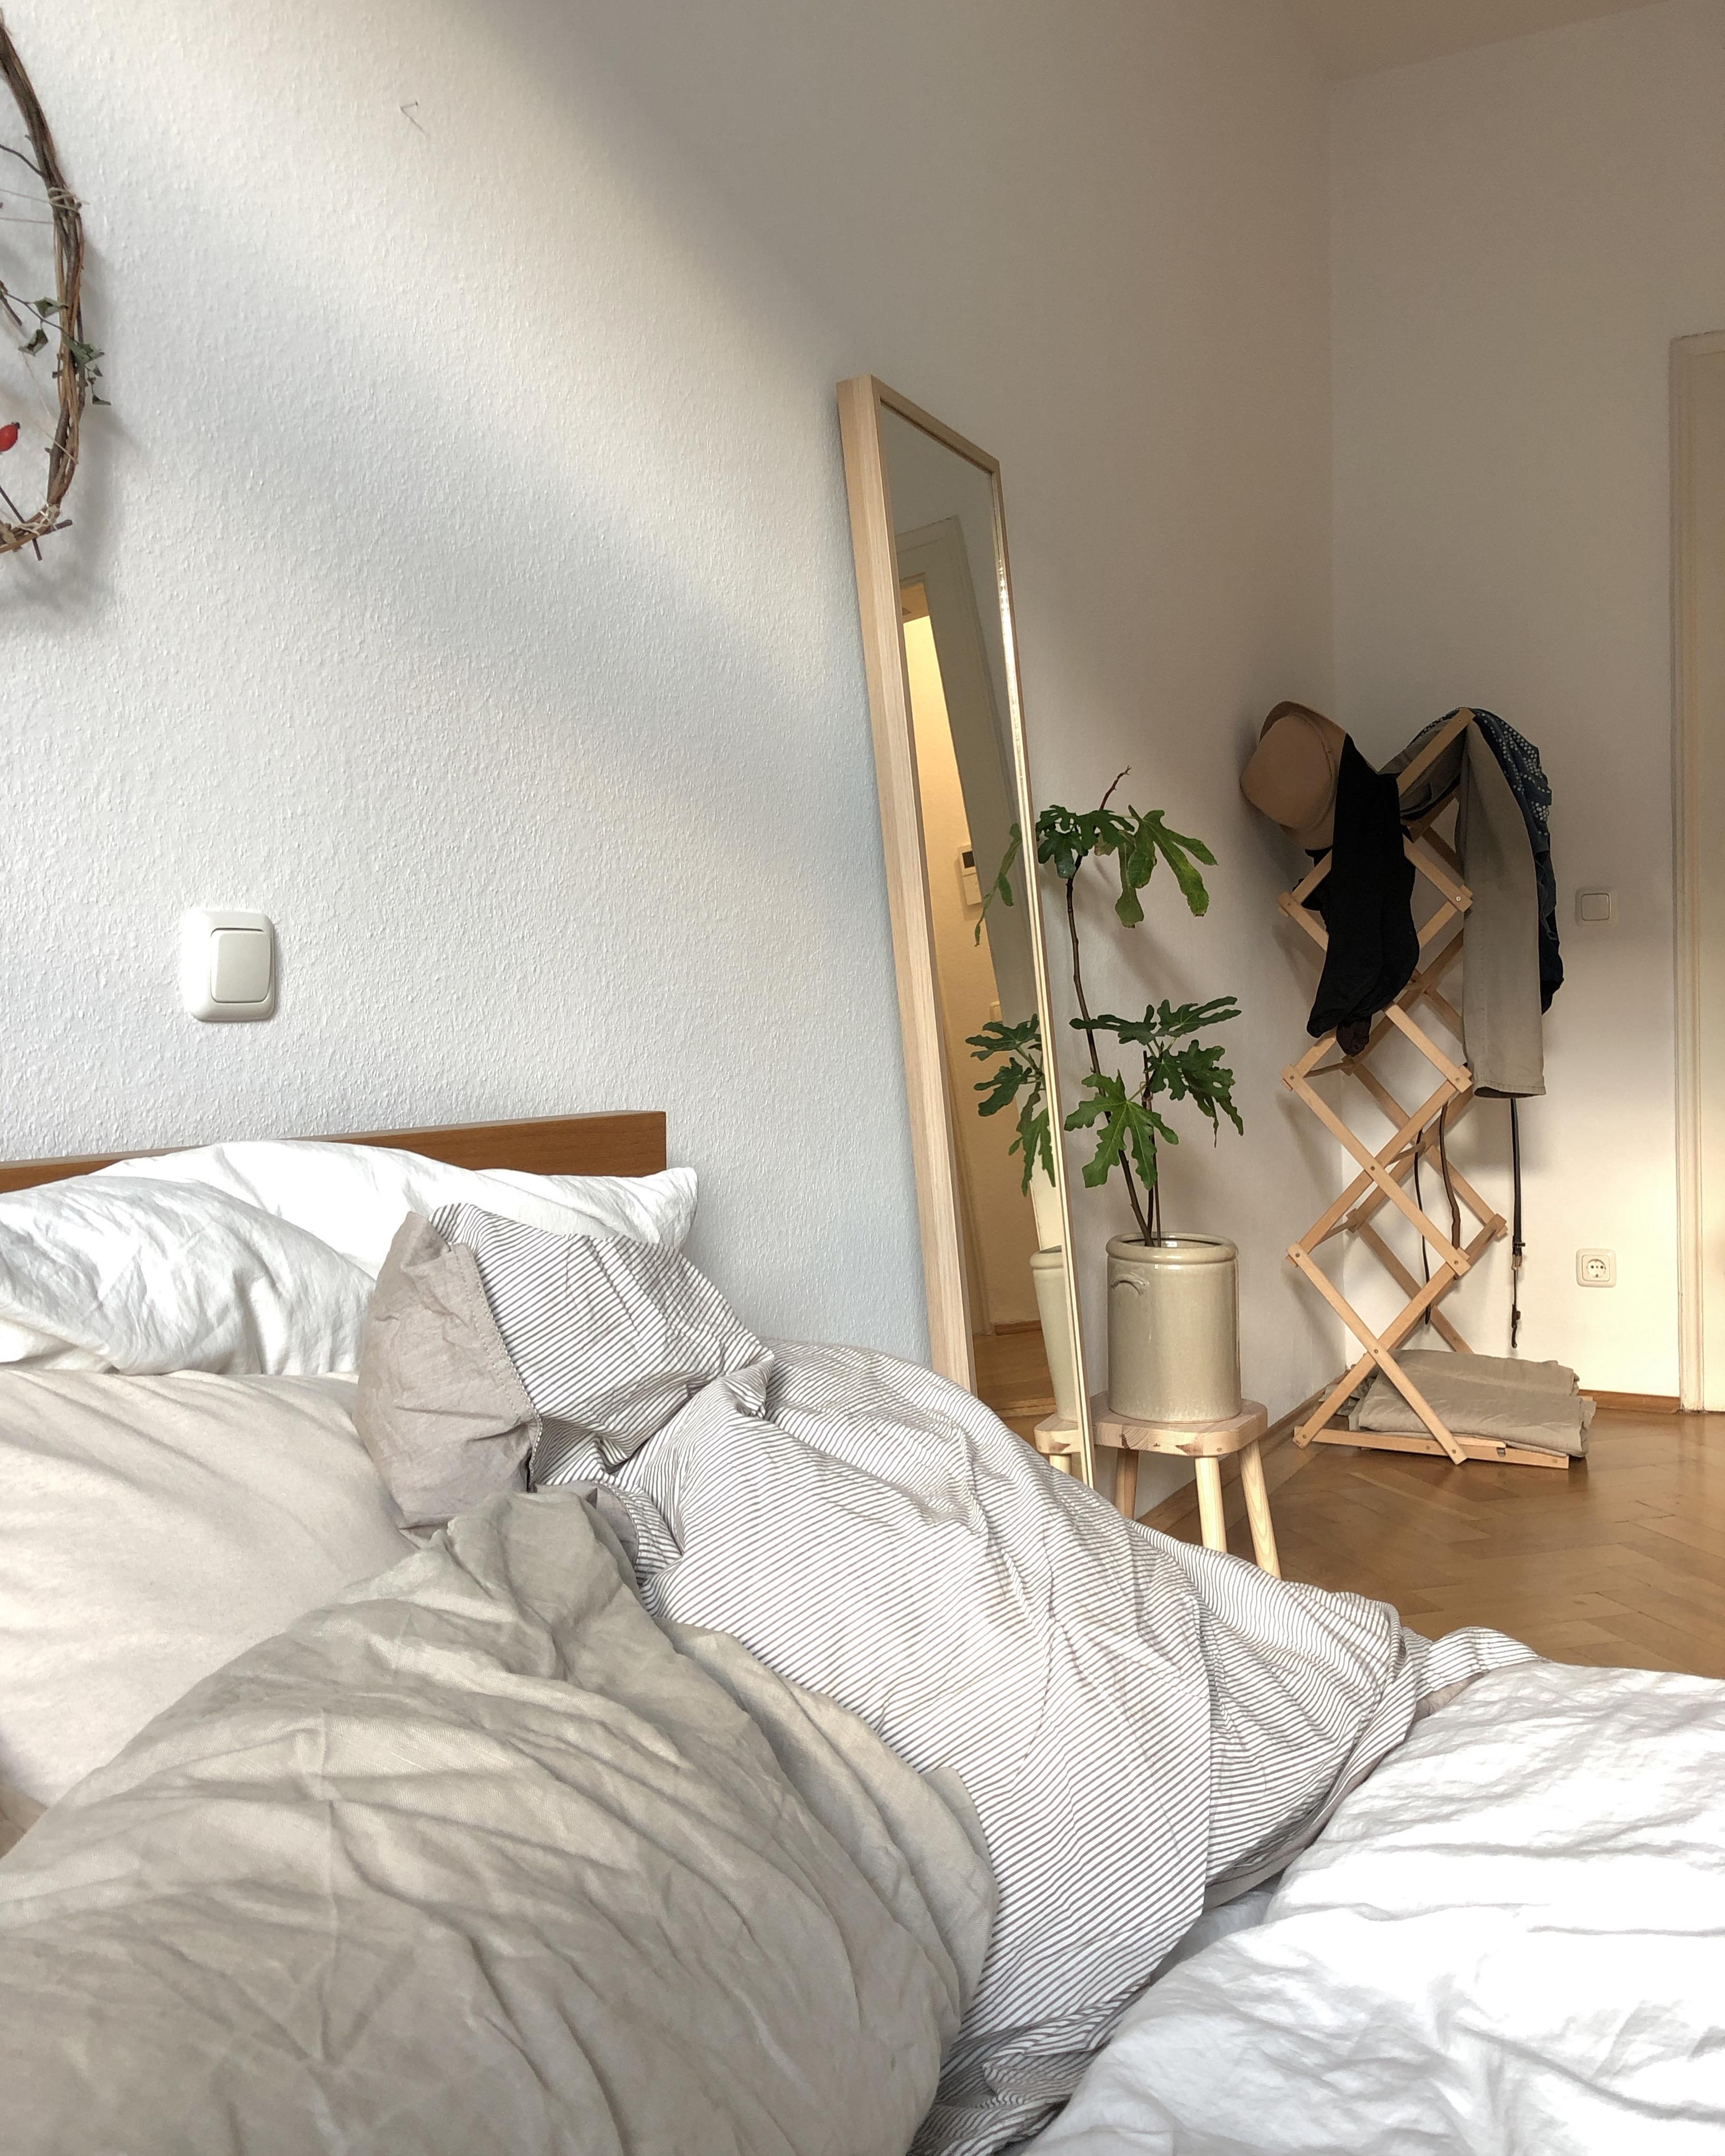 Grosse Vorfreude aufs #bett. #schlafzimmer #minimalistisch #gemütlich #altbauwohnung 